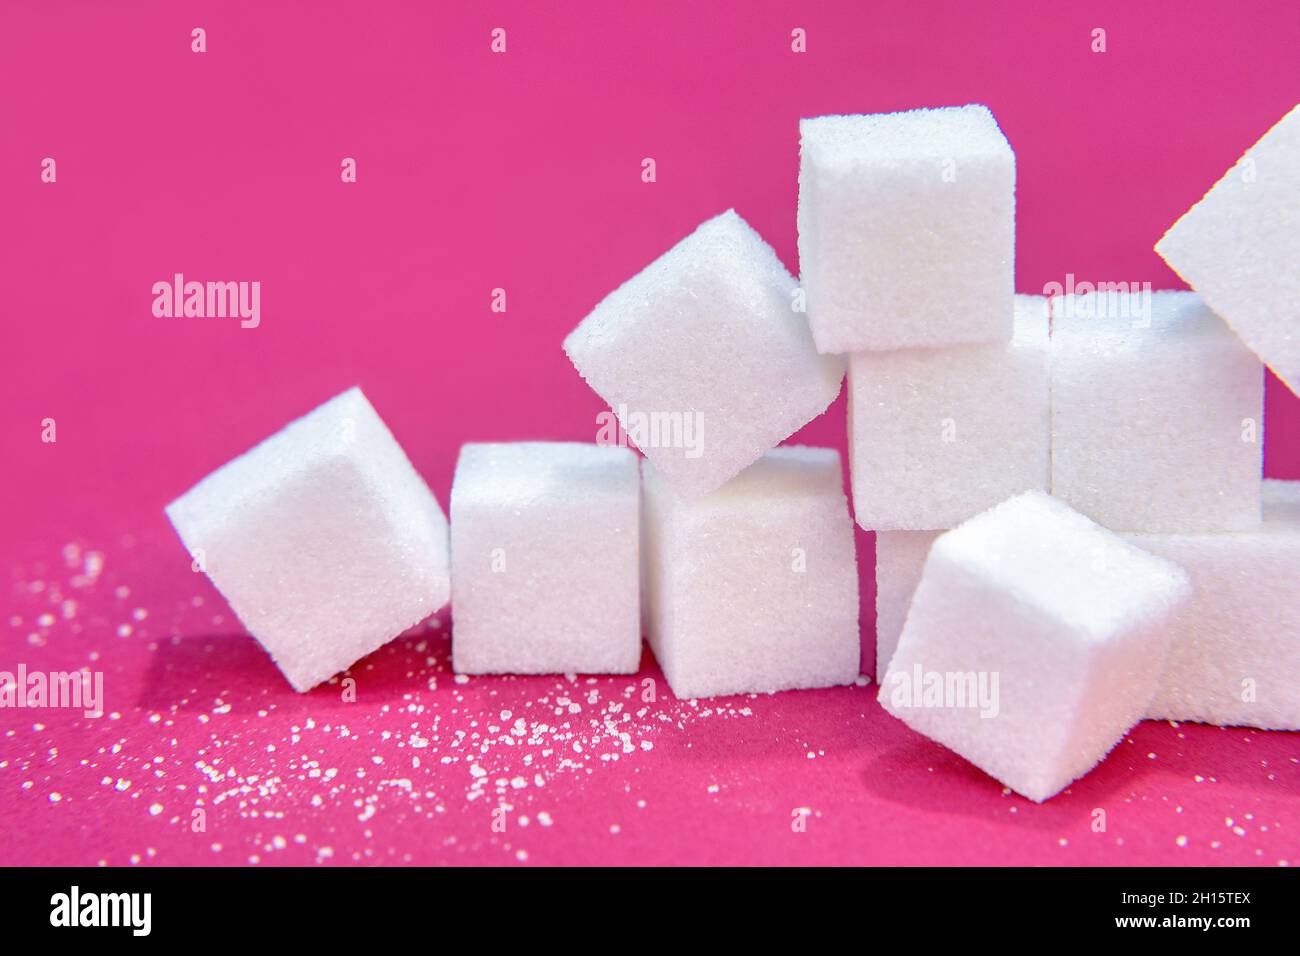 Plusieurs cubes de sucre empilés Banque D'Images